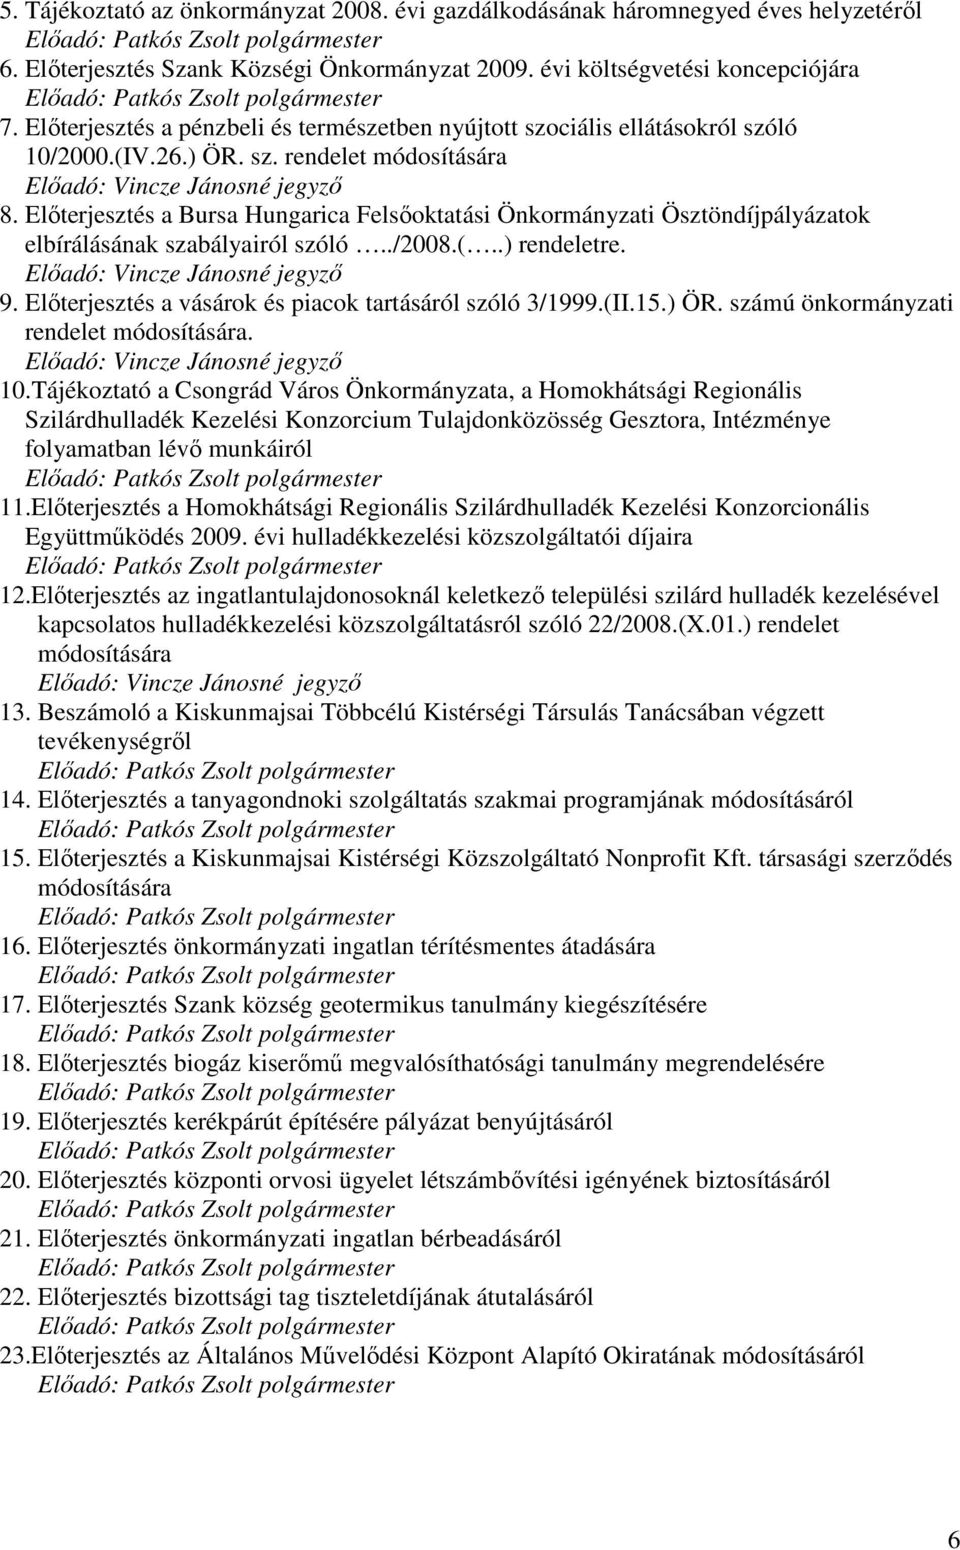 Elıterjesztés a Bursa Hungarica Felsıoktatási Önkormányzati Ösztöndíjpályázatok elbírálásának szabályairól szóló../2008.(..) rendeletre. Elıadó: 9.